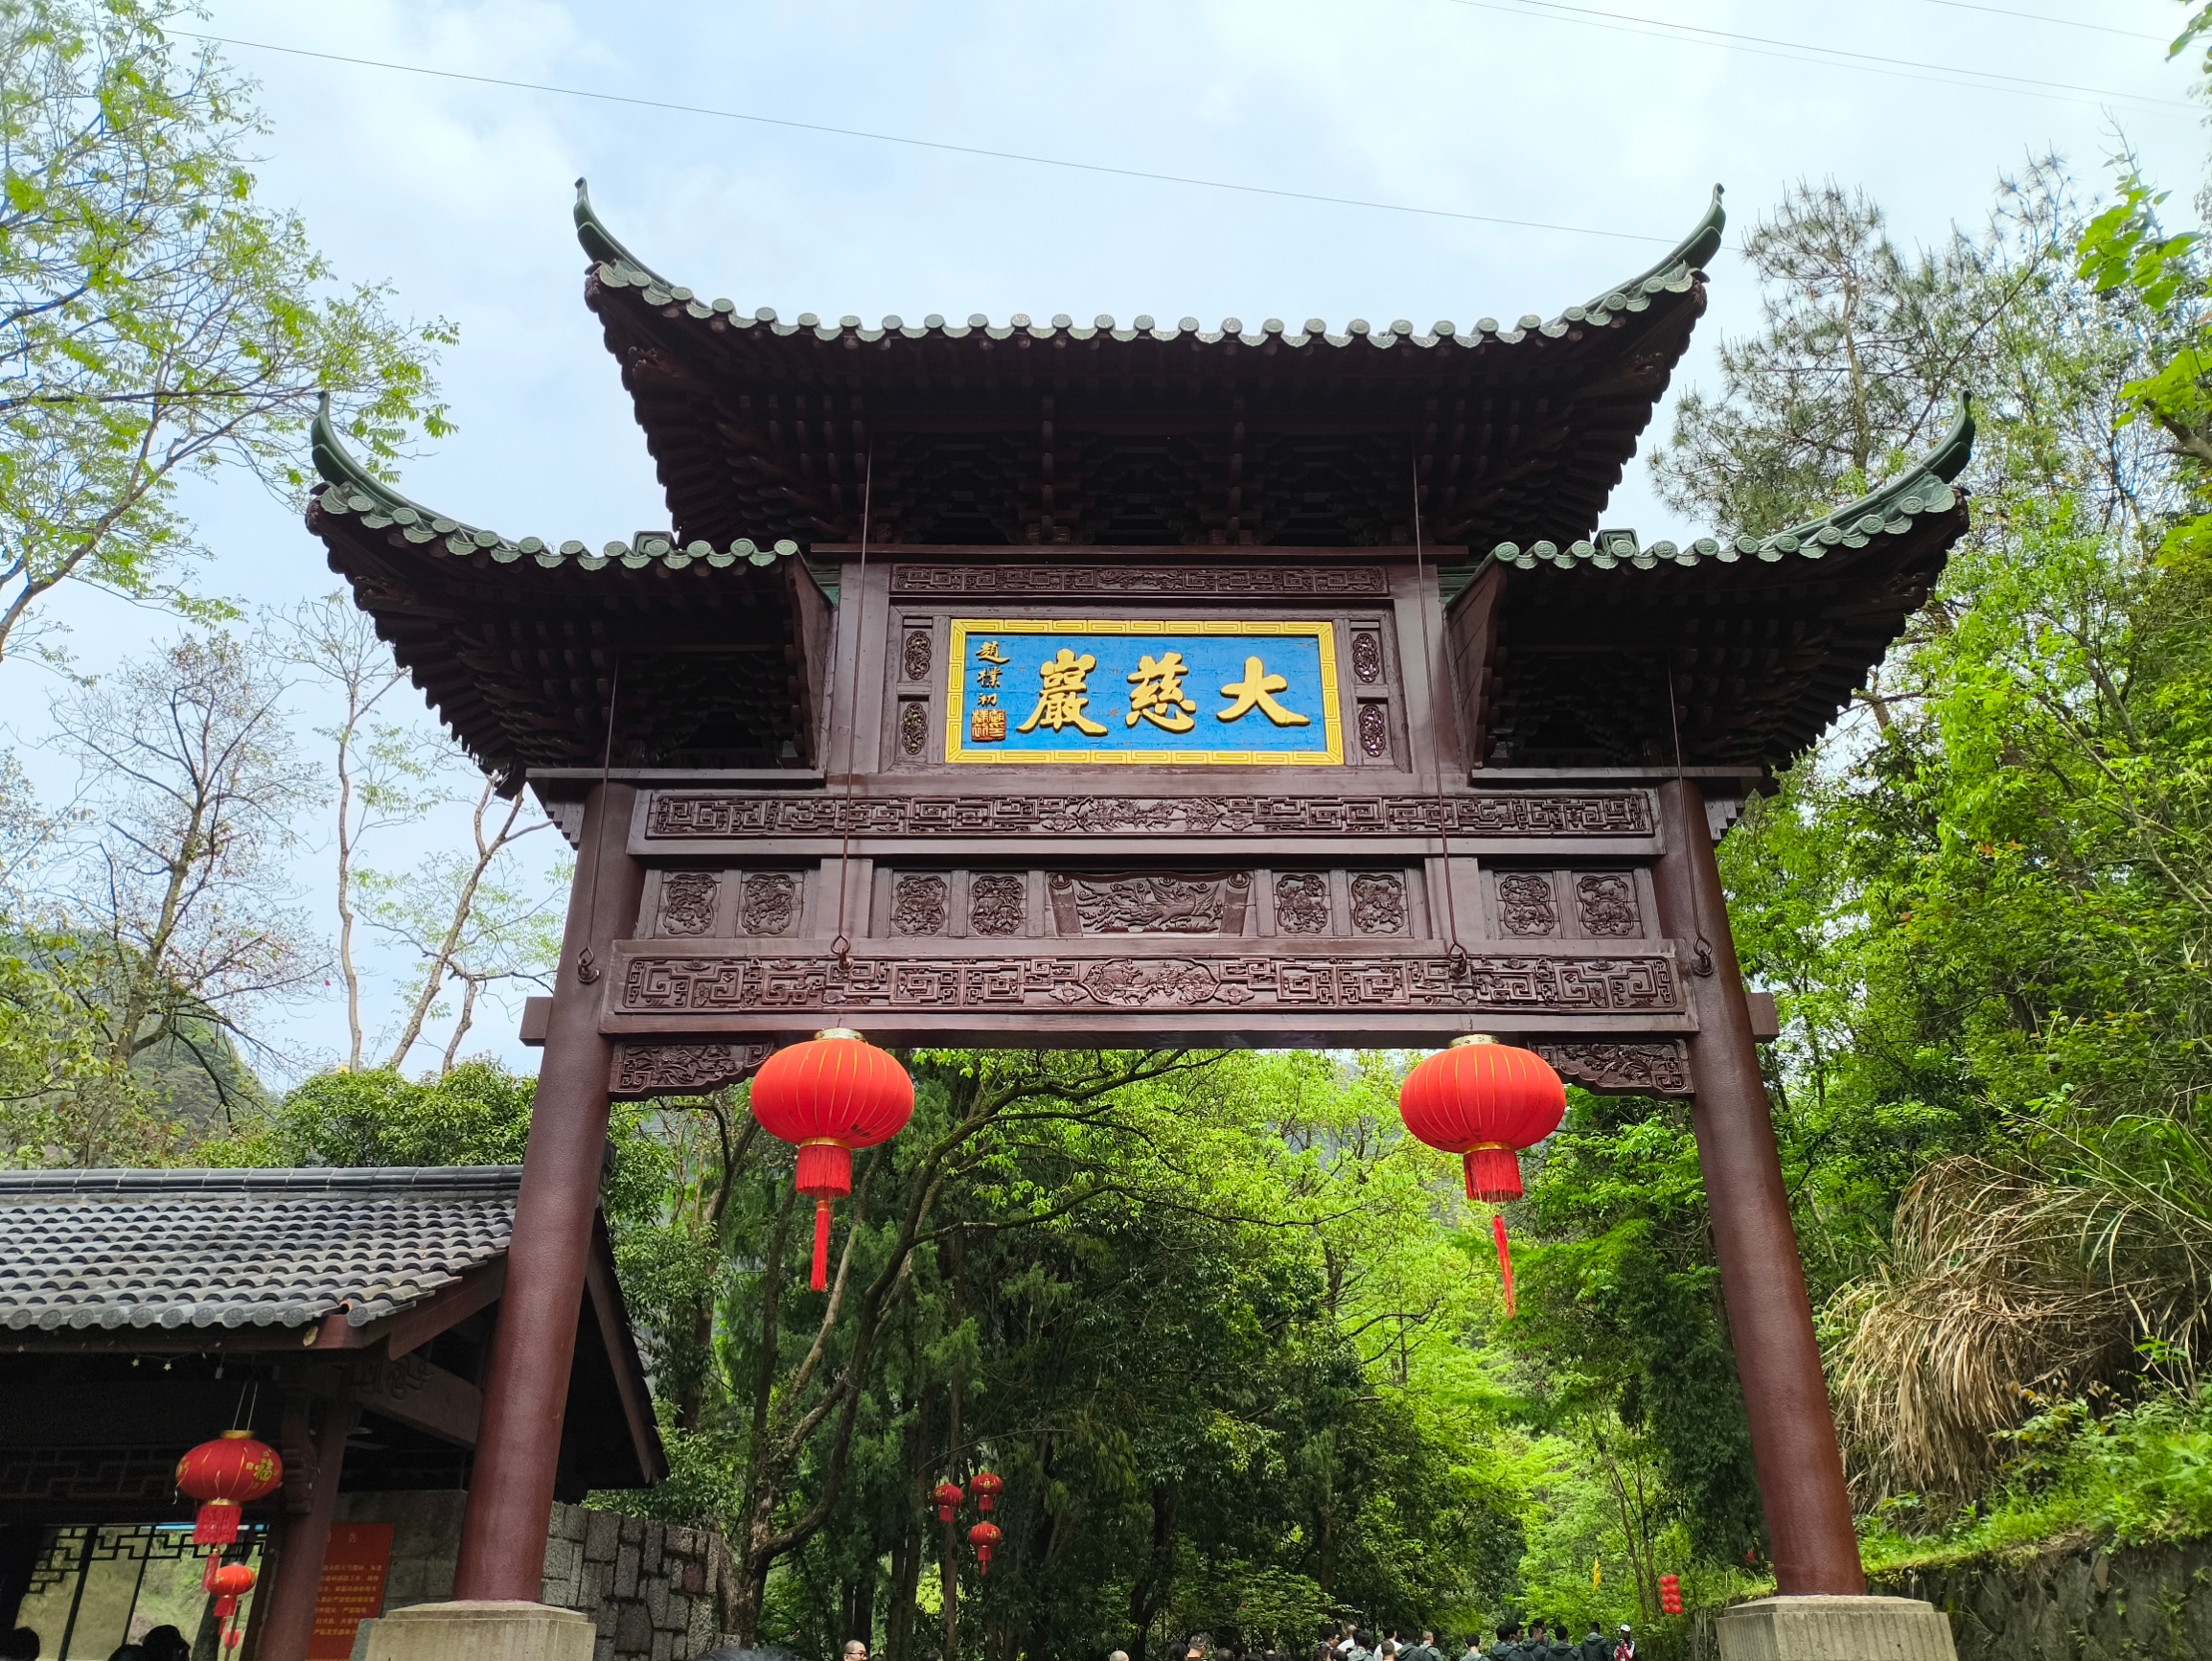 建德是杭州的一个县级市，有个很有人气的景区大慈岩，号称浙江小九华，虽然不是太高，但建议坐缆车上去，可